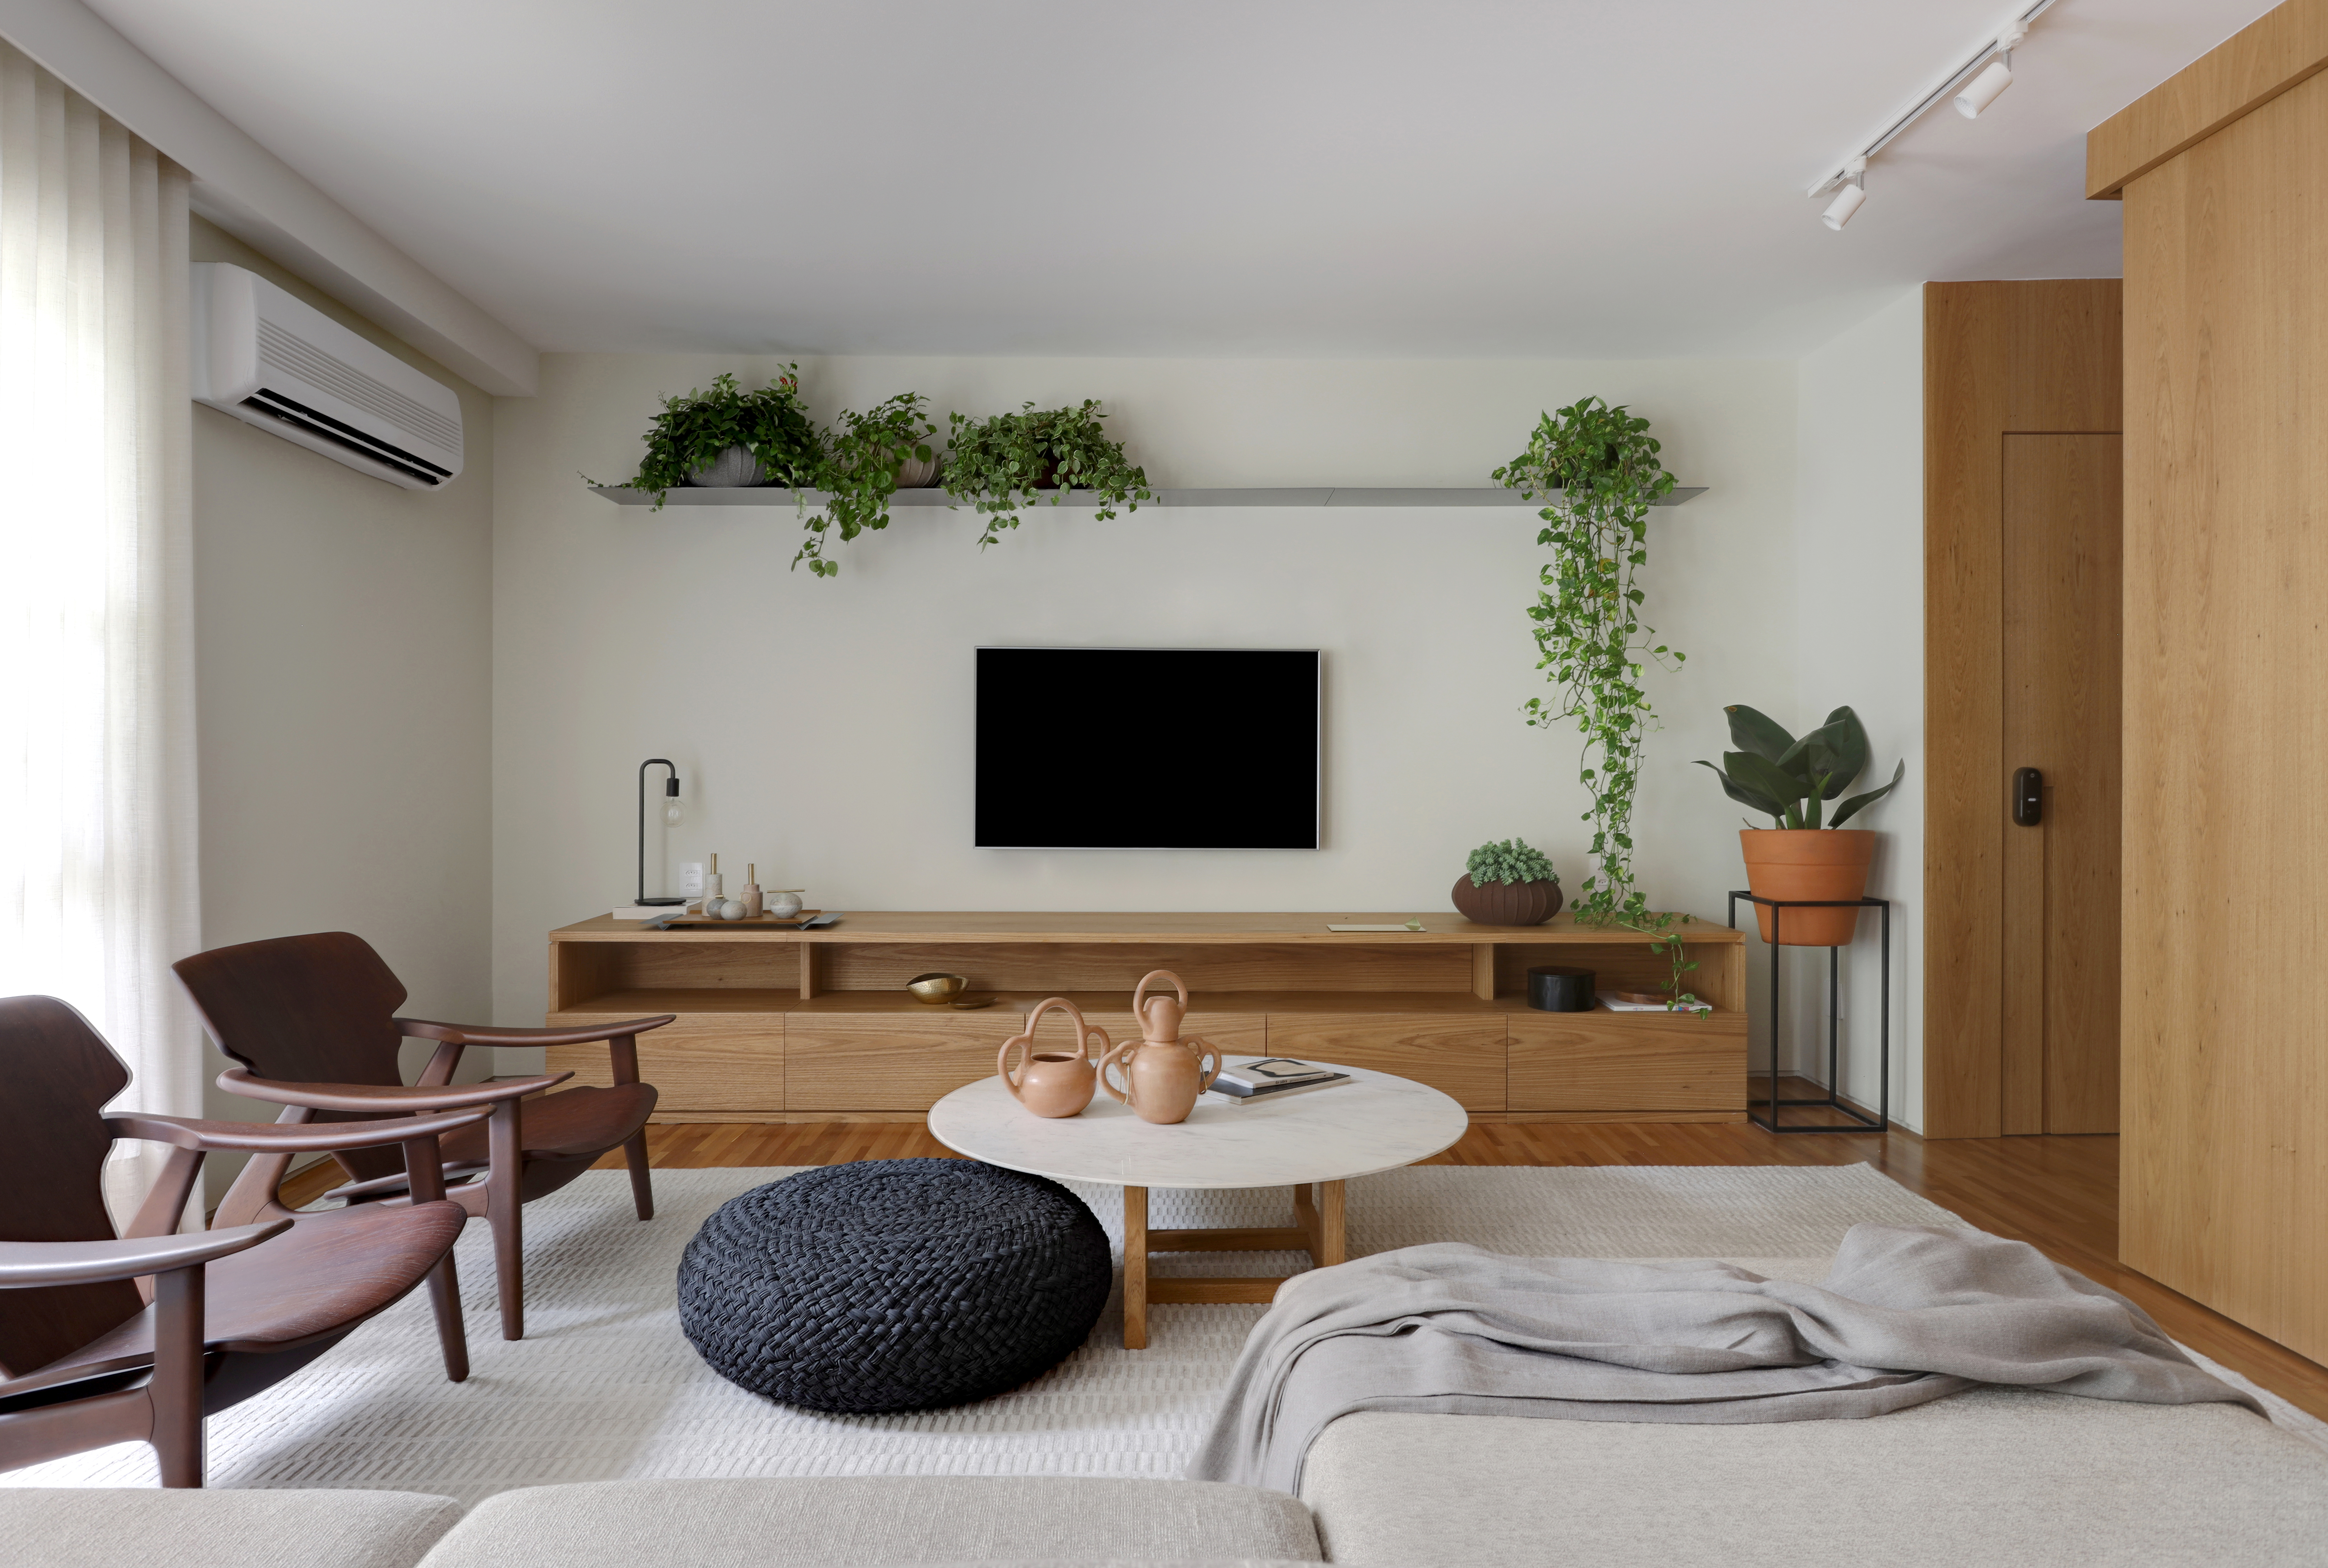  Apartamento de 180 m² kun plantbretoj kaj botanika tapeto